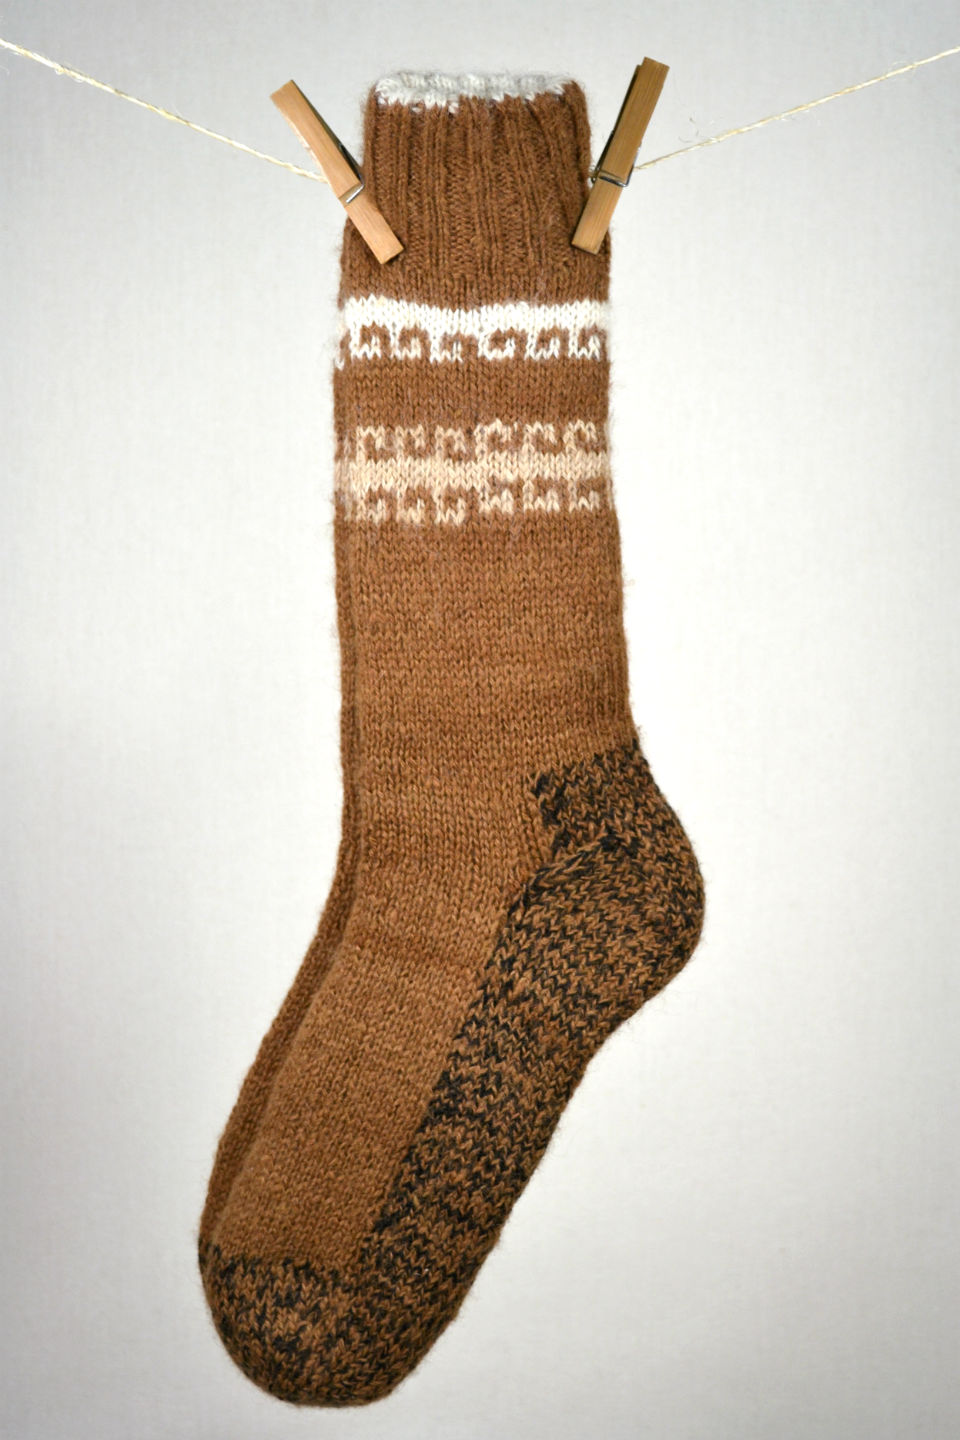 bas chaussettes double épaisseur et réversibles 80% alpaga tricot à la main couleurs naturelles brun à motifs